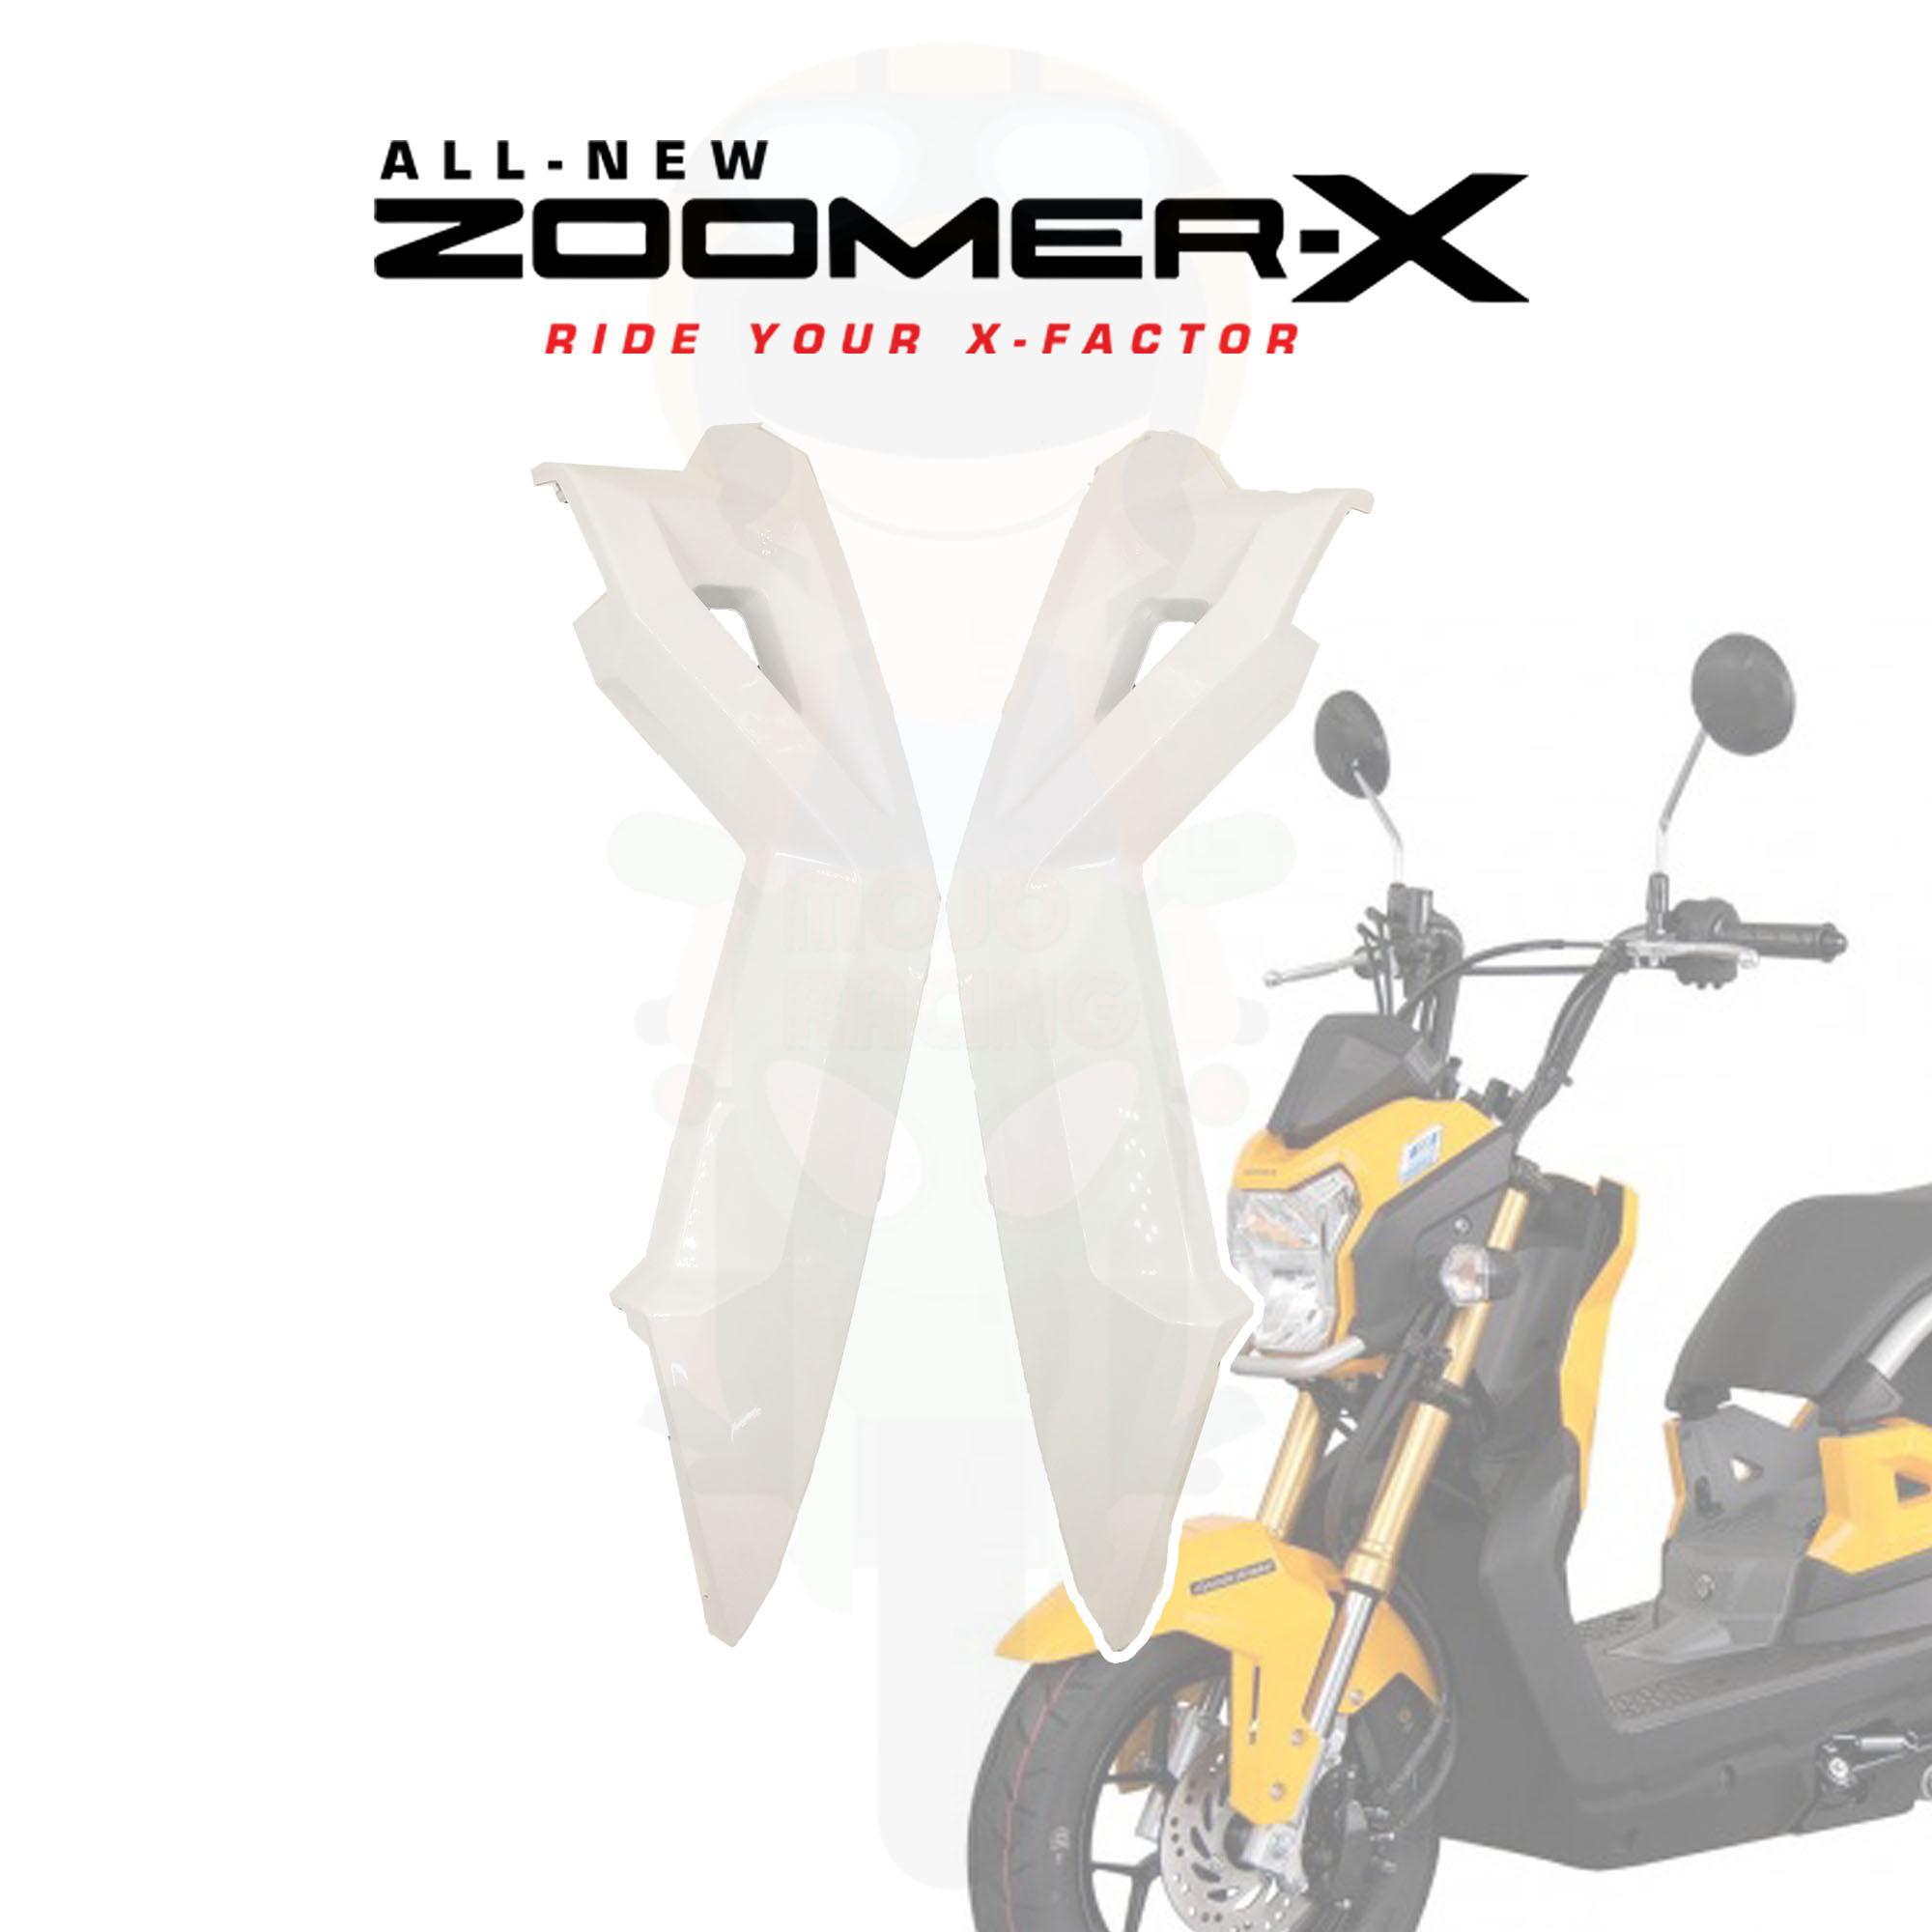 ฝาครอบตัวถัง Zoomer-X  New 2015 สีขาว ส่งฟรี Kerry มีเก็บเงินปลายทาง